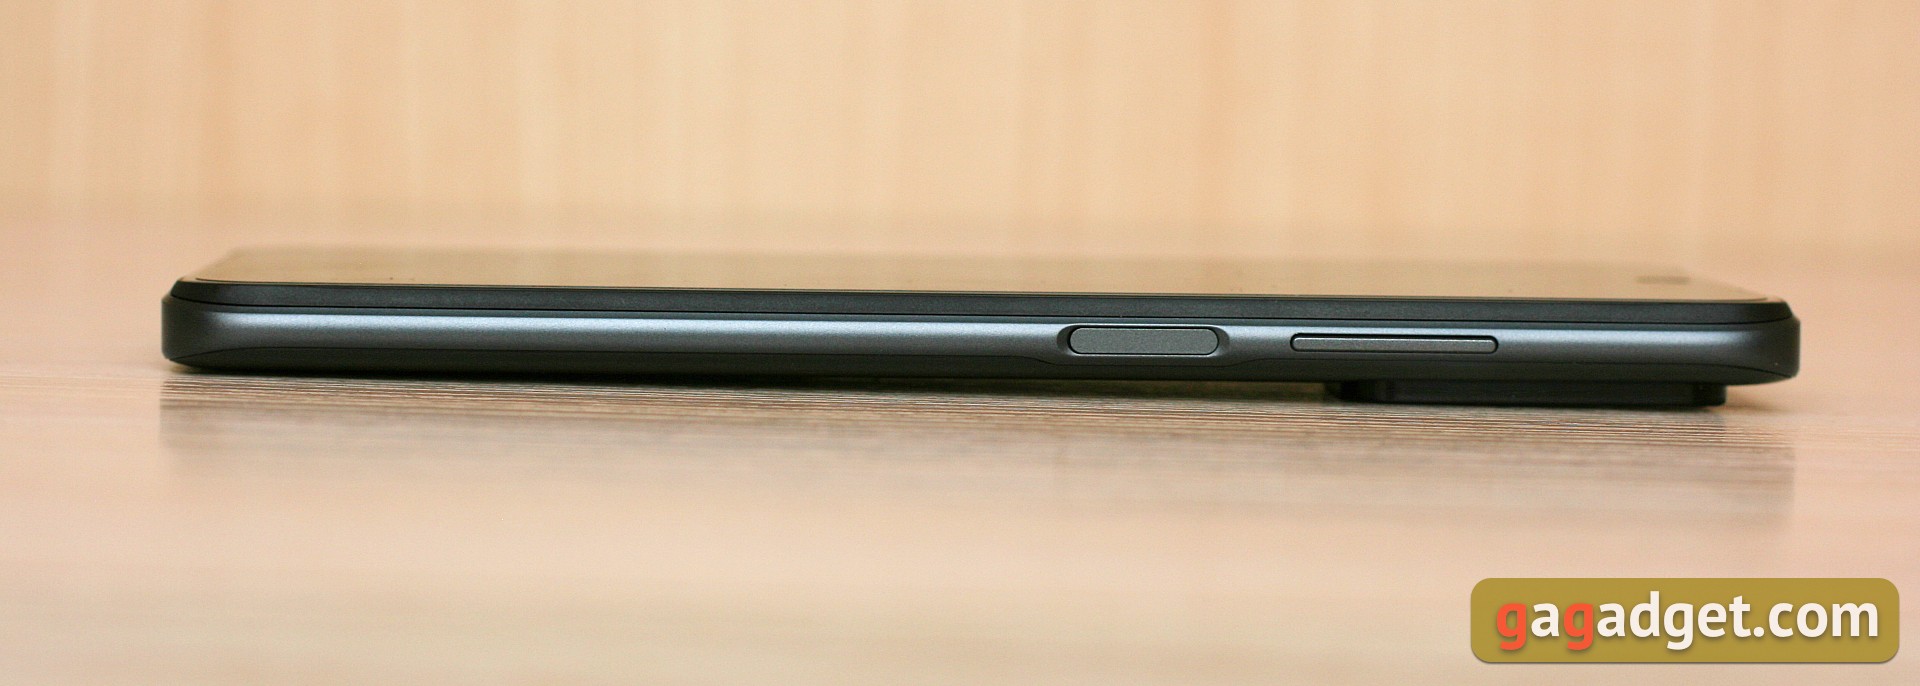 Recenzja Xiaomi Redmi 10: legendarny producent budżetowy, teraz z 50-megapikselowym aparatem-8